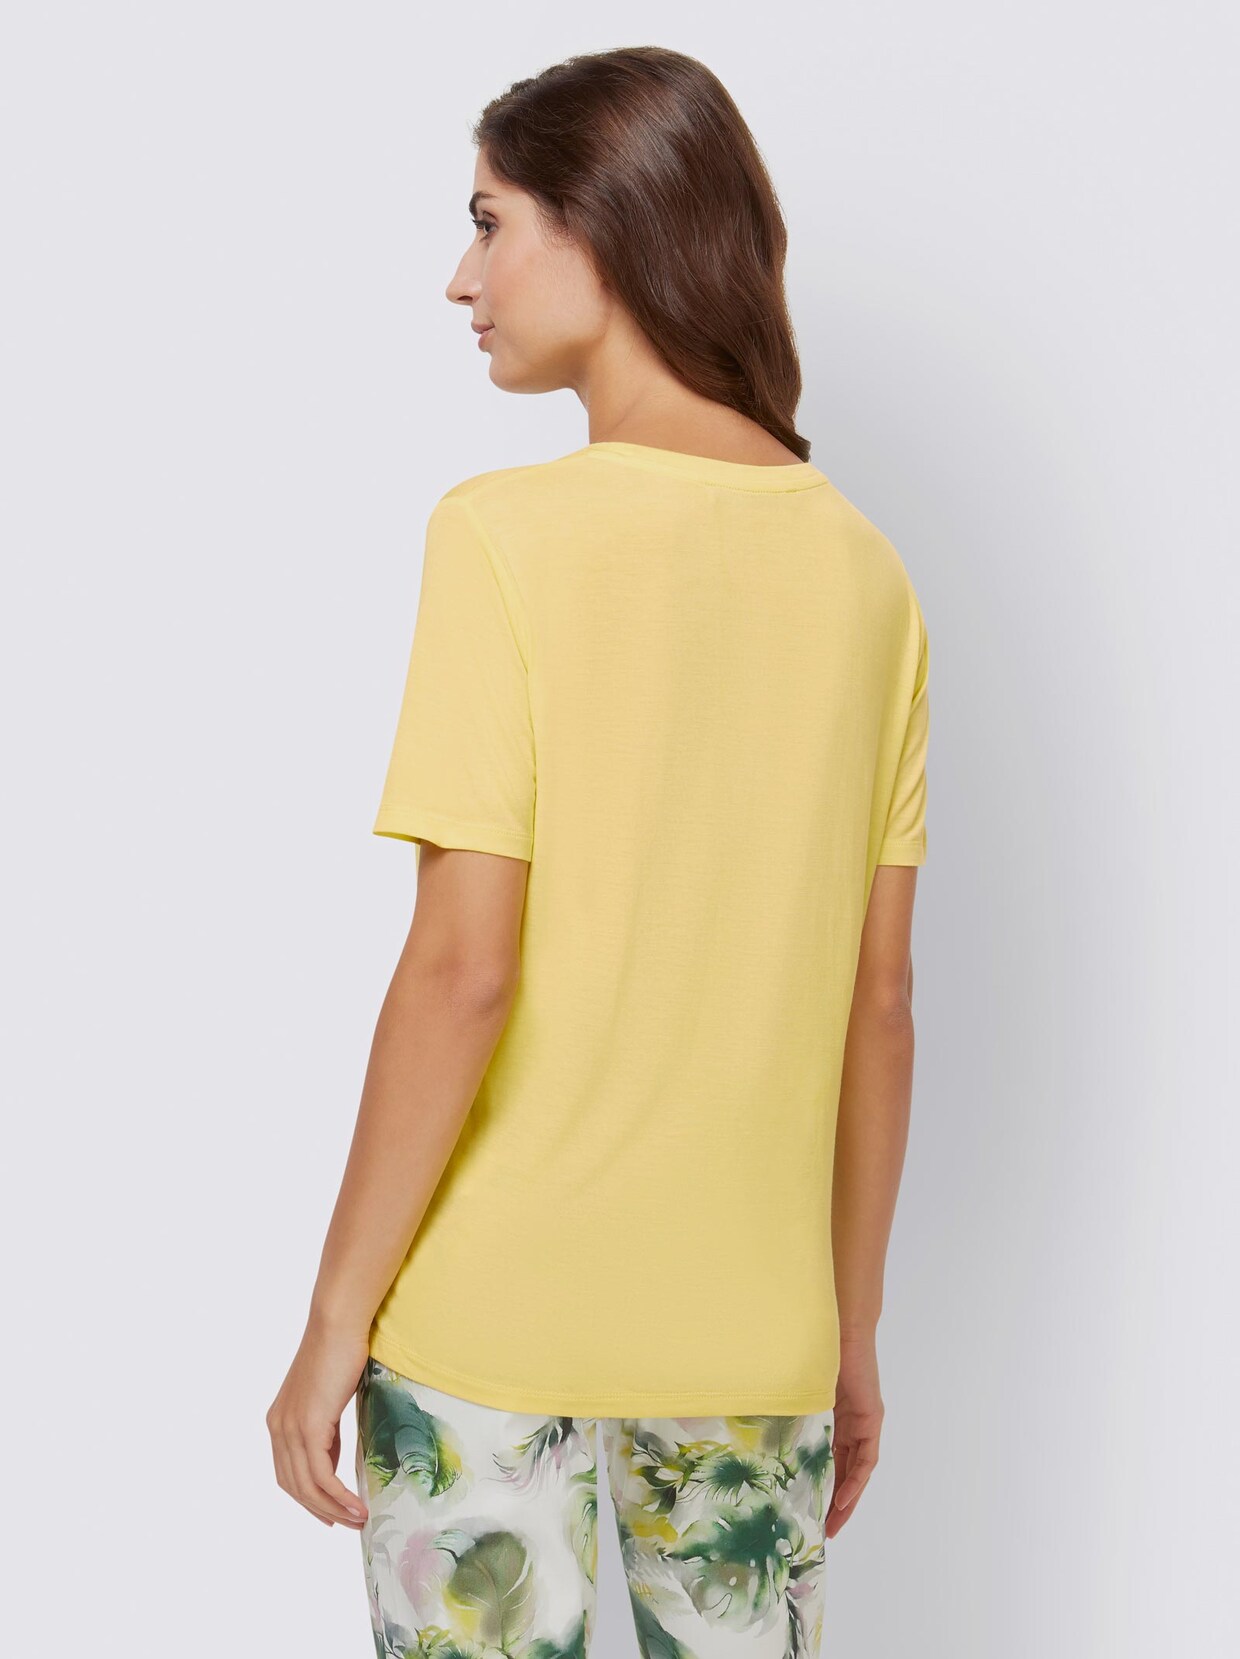 Ashley Brooke Shirt - limone